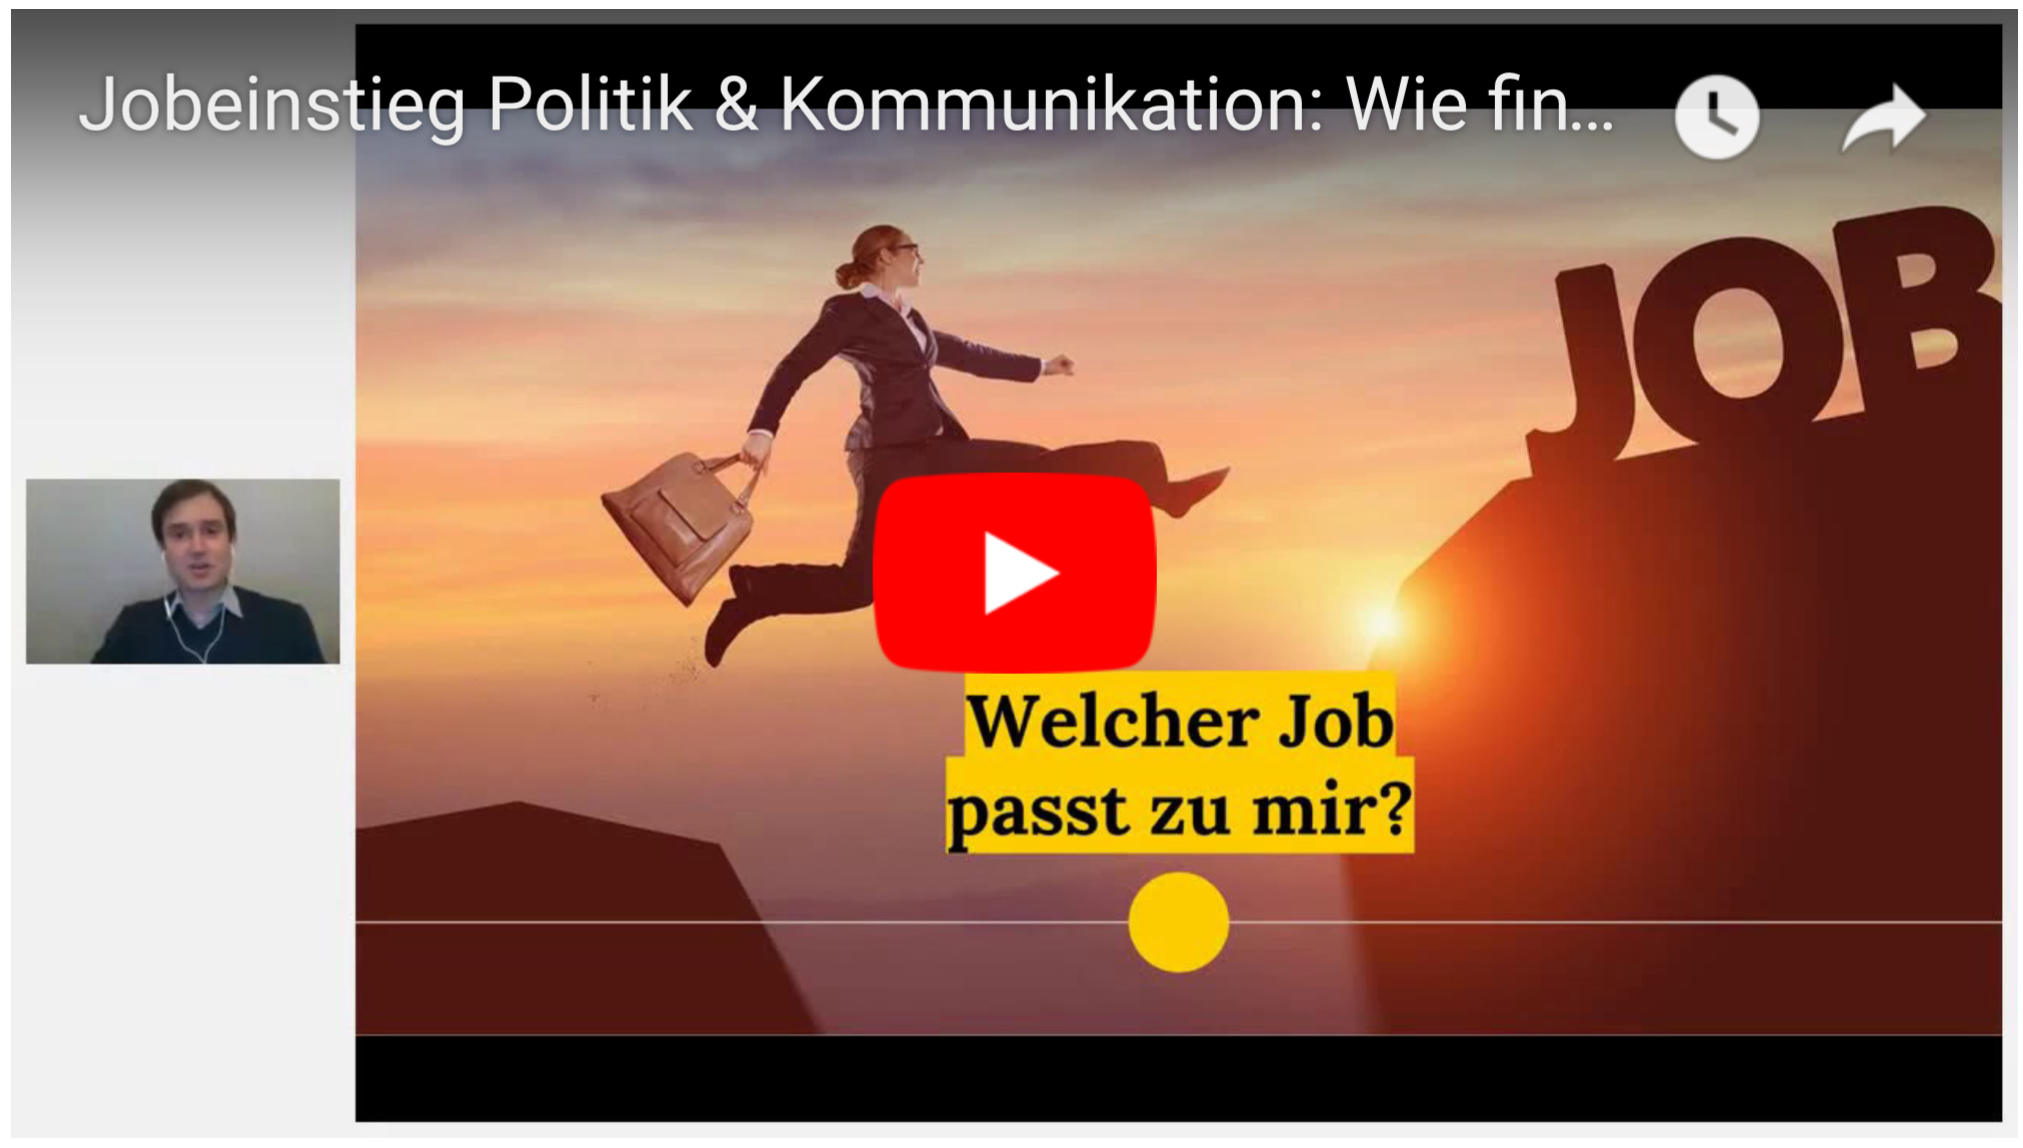 Jobs in Politik & Kommunikation: Wie Du den passenden Job findest?